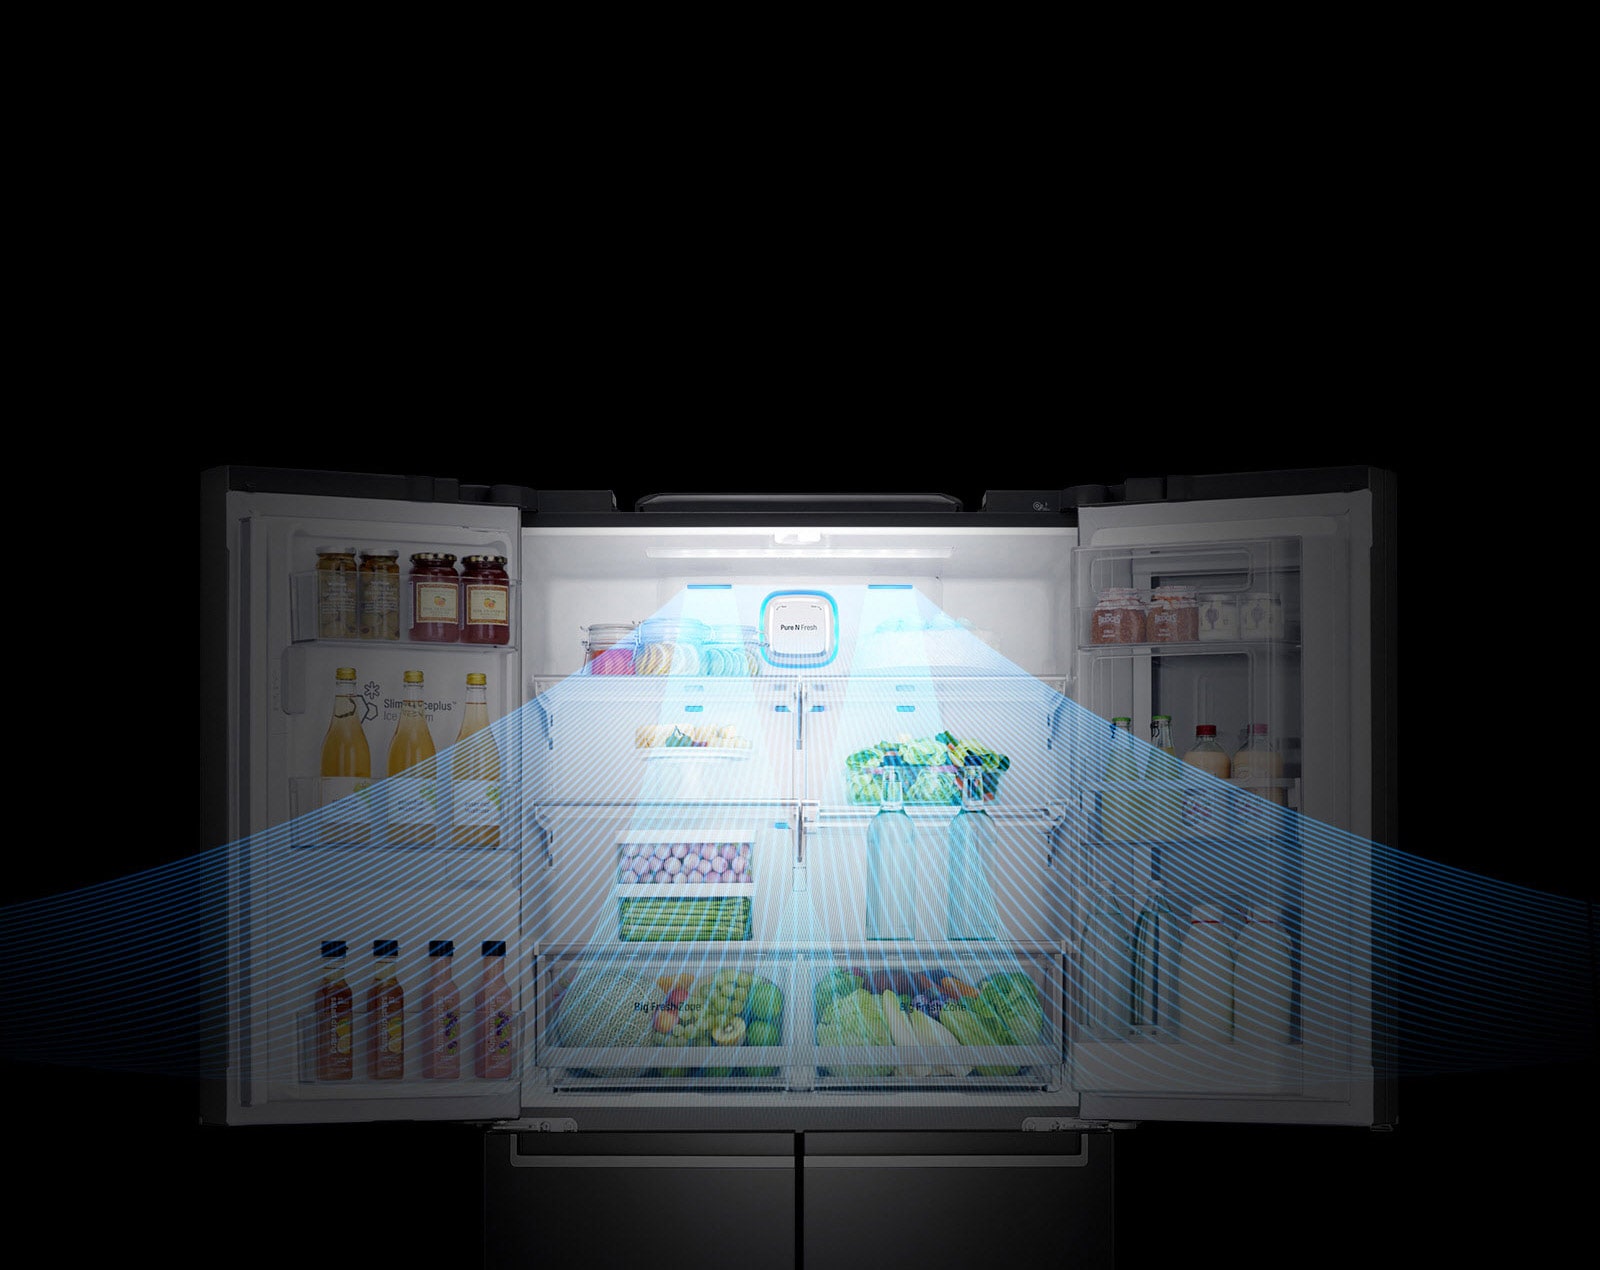 Réfrigérateur LG intelligent 